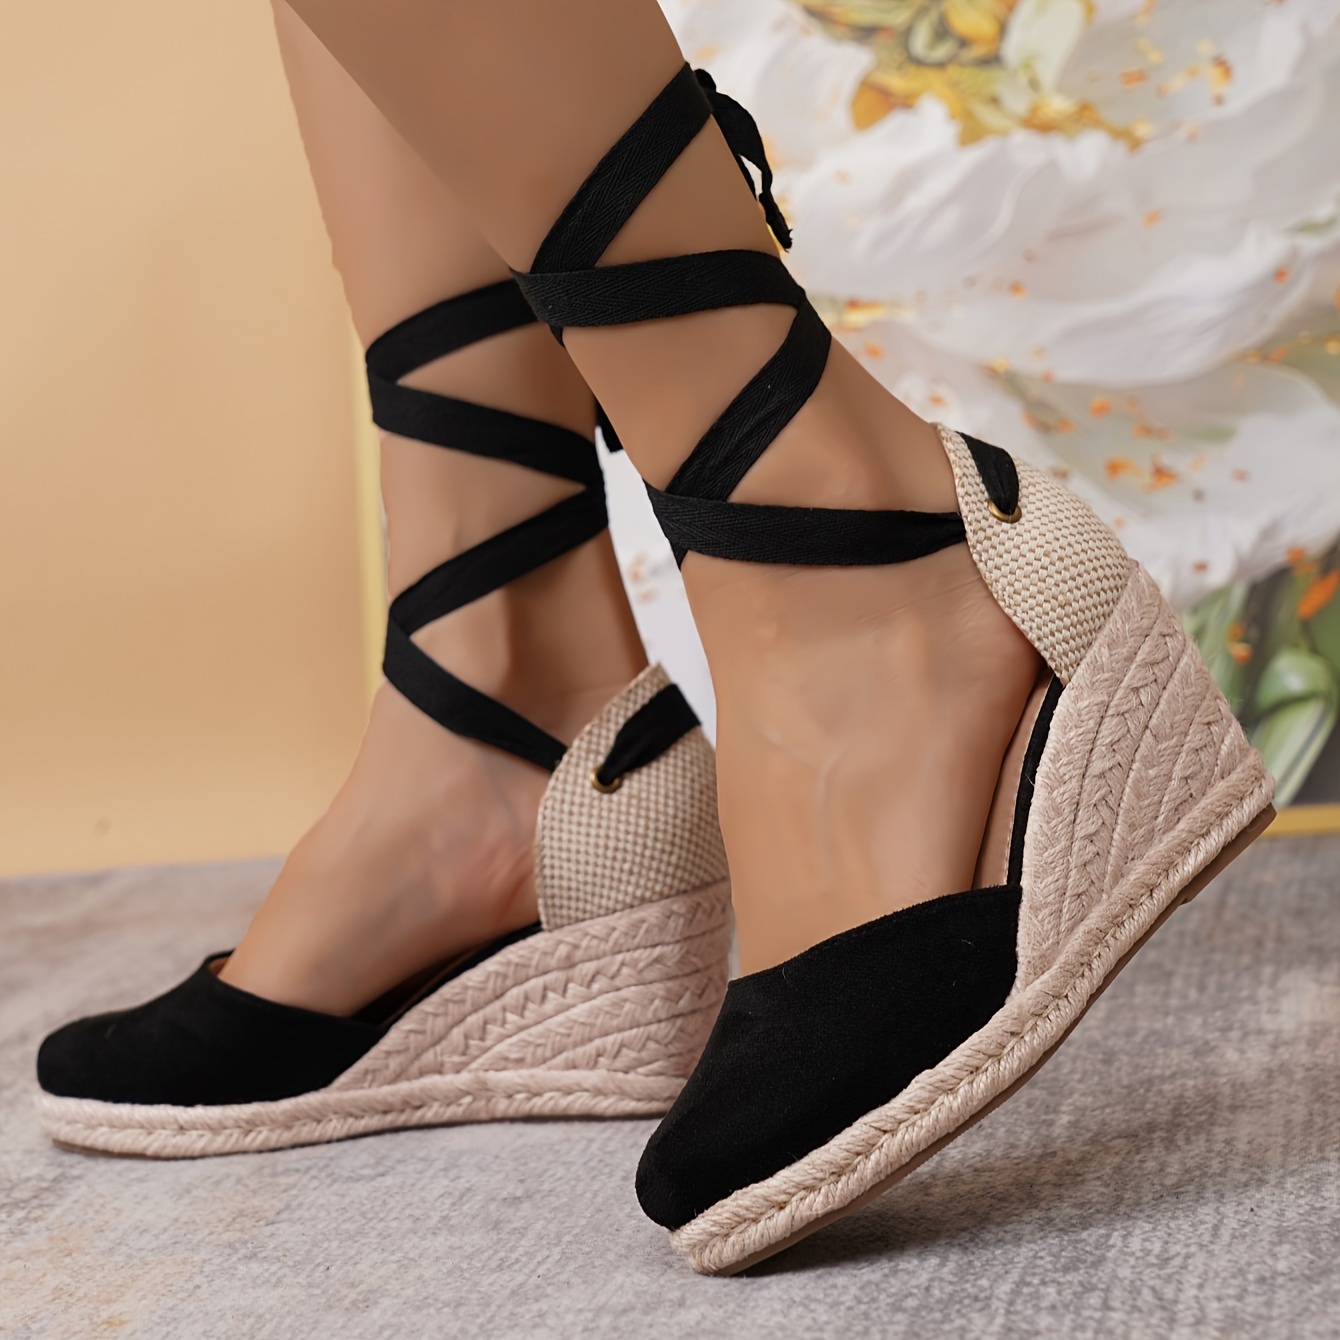 

Women's Solid Color Elegant Sandals, Crisscross Lace Up Platform Closed Toe Shoes, Comfort Espadrilles Wedge Shoes